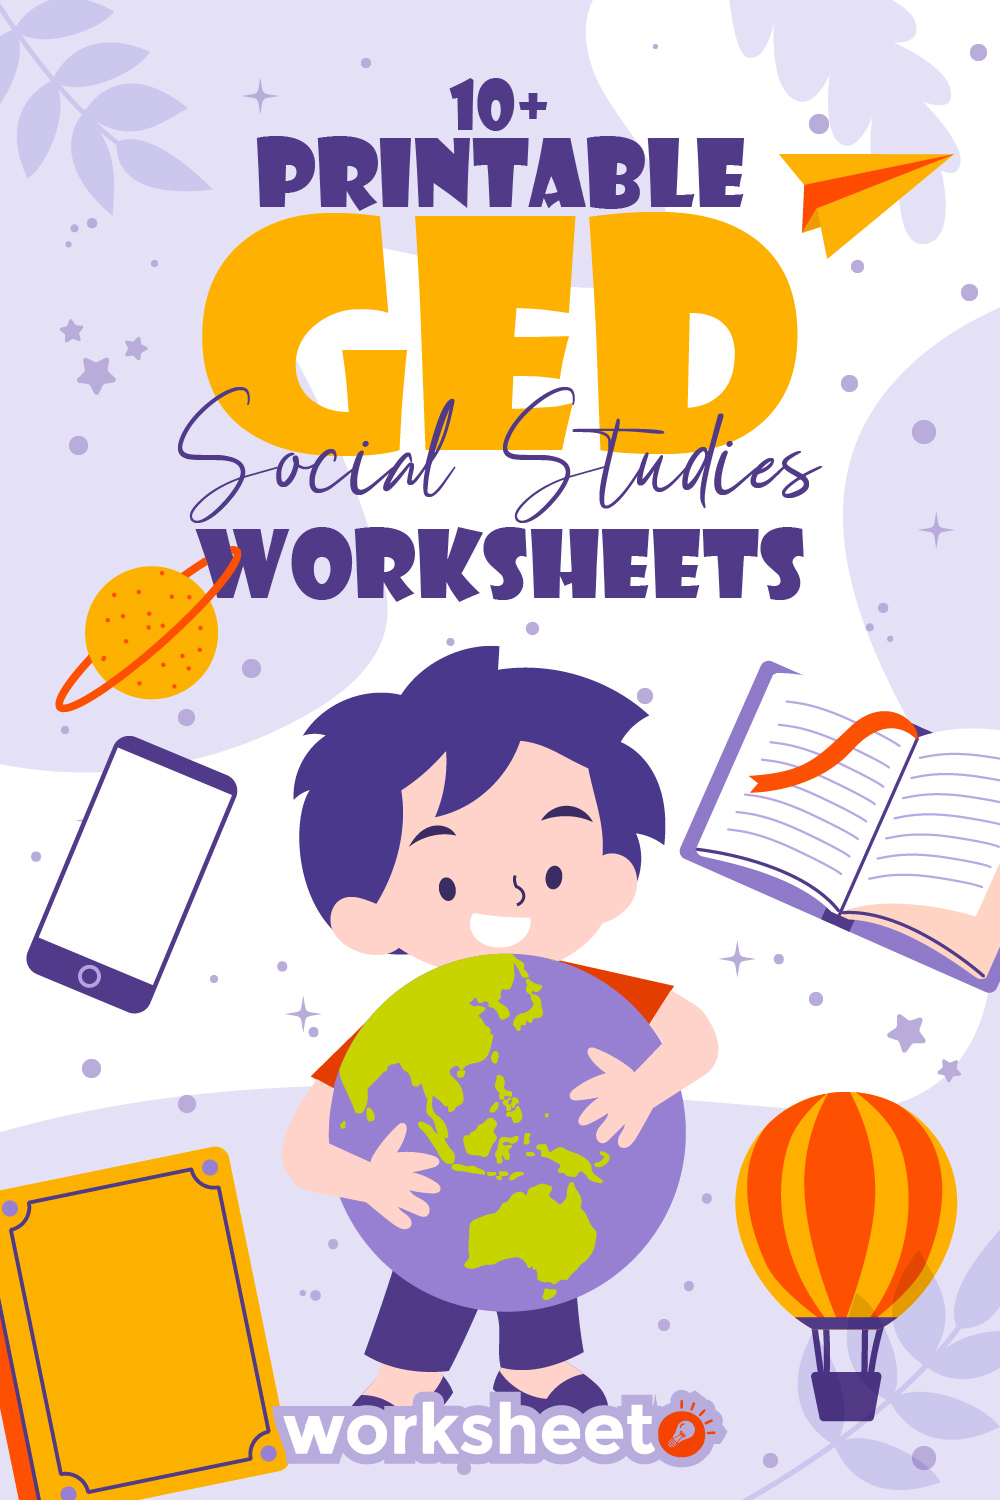 Printable GED Social Studies Worksheets